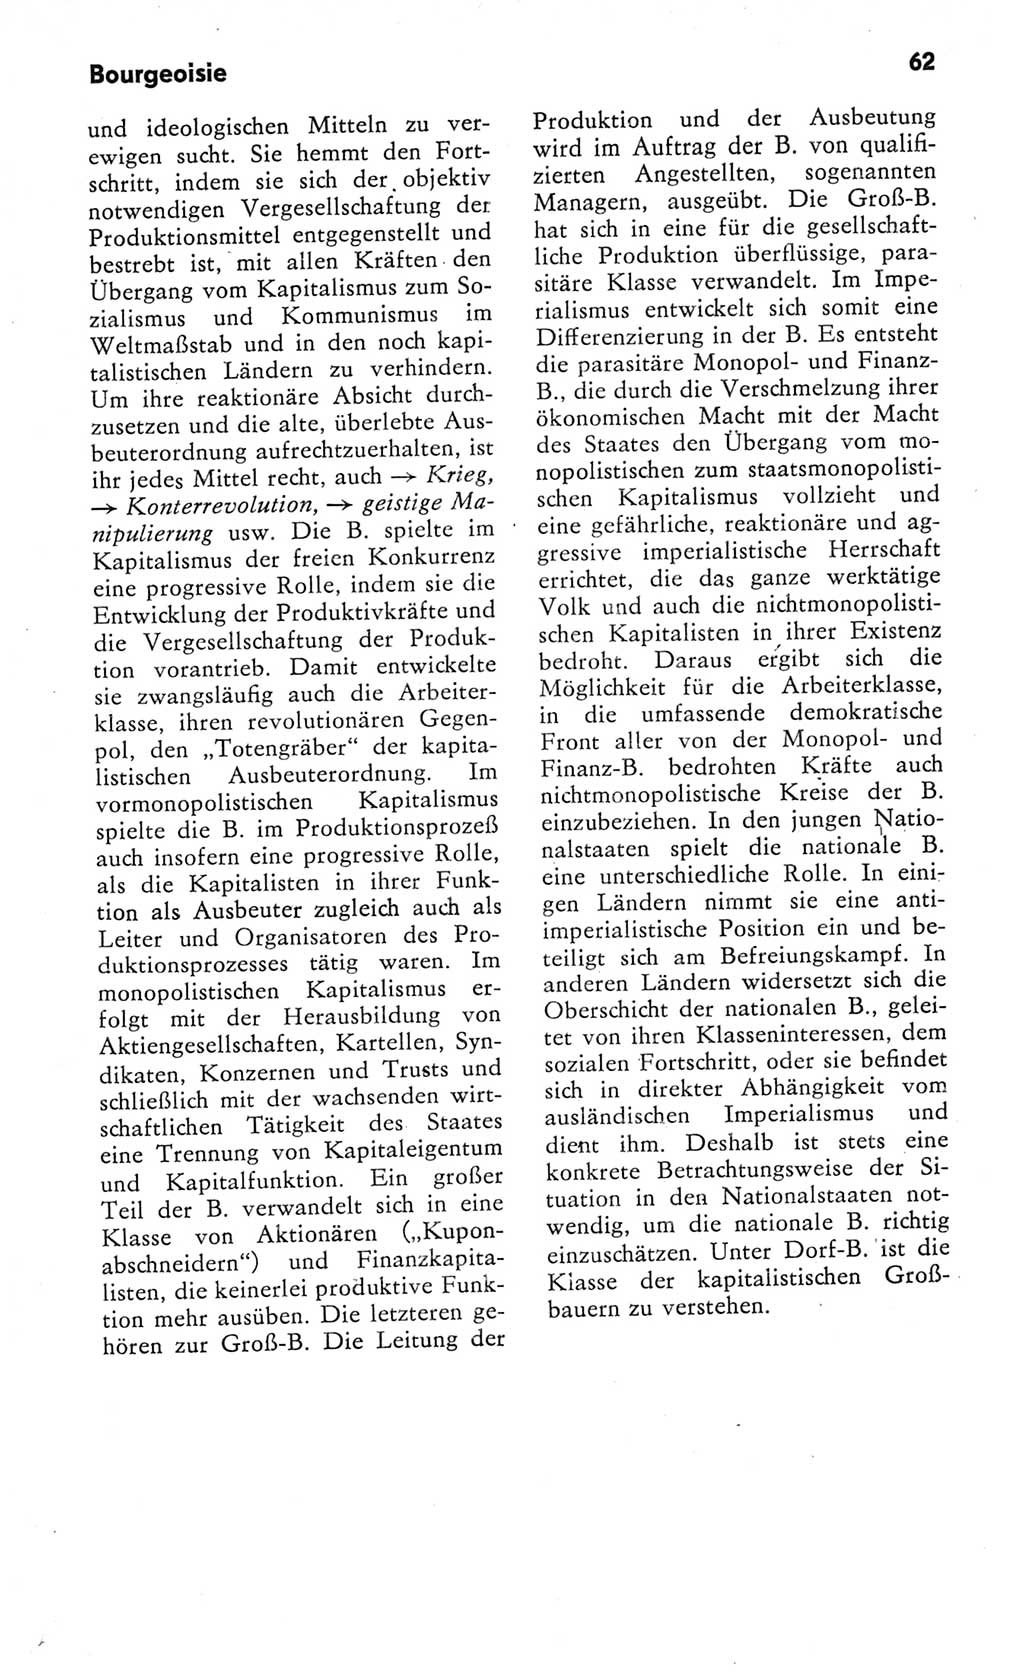 Kleines Wörterbuch der marxistisch-leninistischen Philosophie [Deutsche Demokratische Republik (DDR)] 1982, Seite 62 (Kl. Wb. ML Phil. DDR 1982, S. 62)